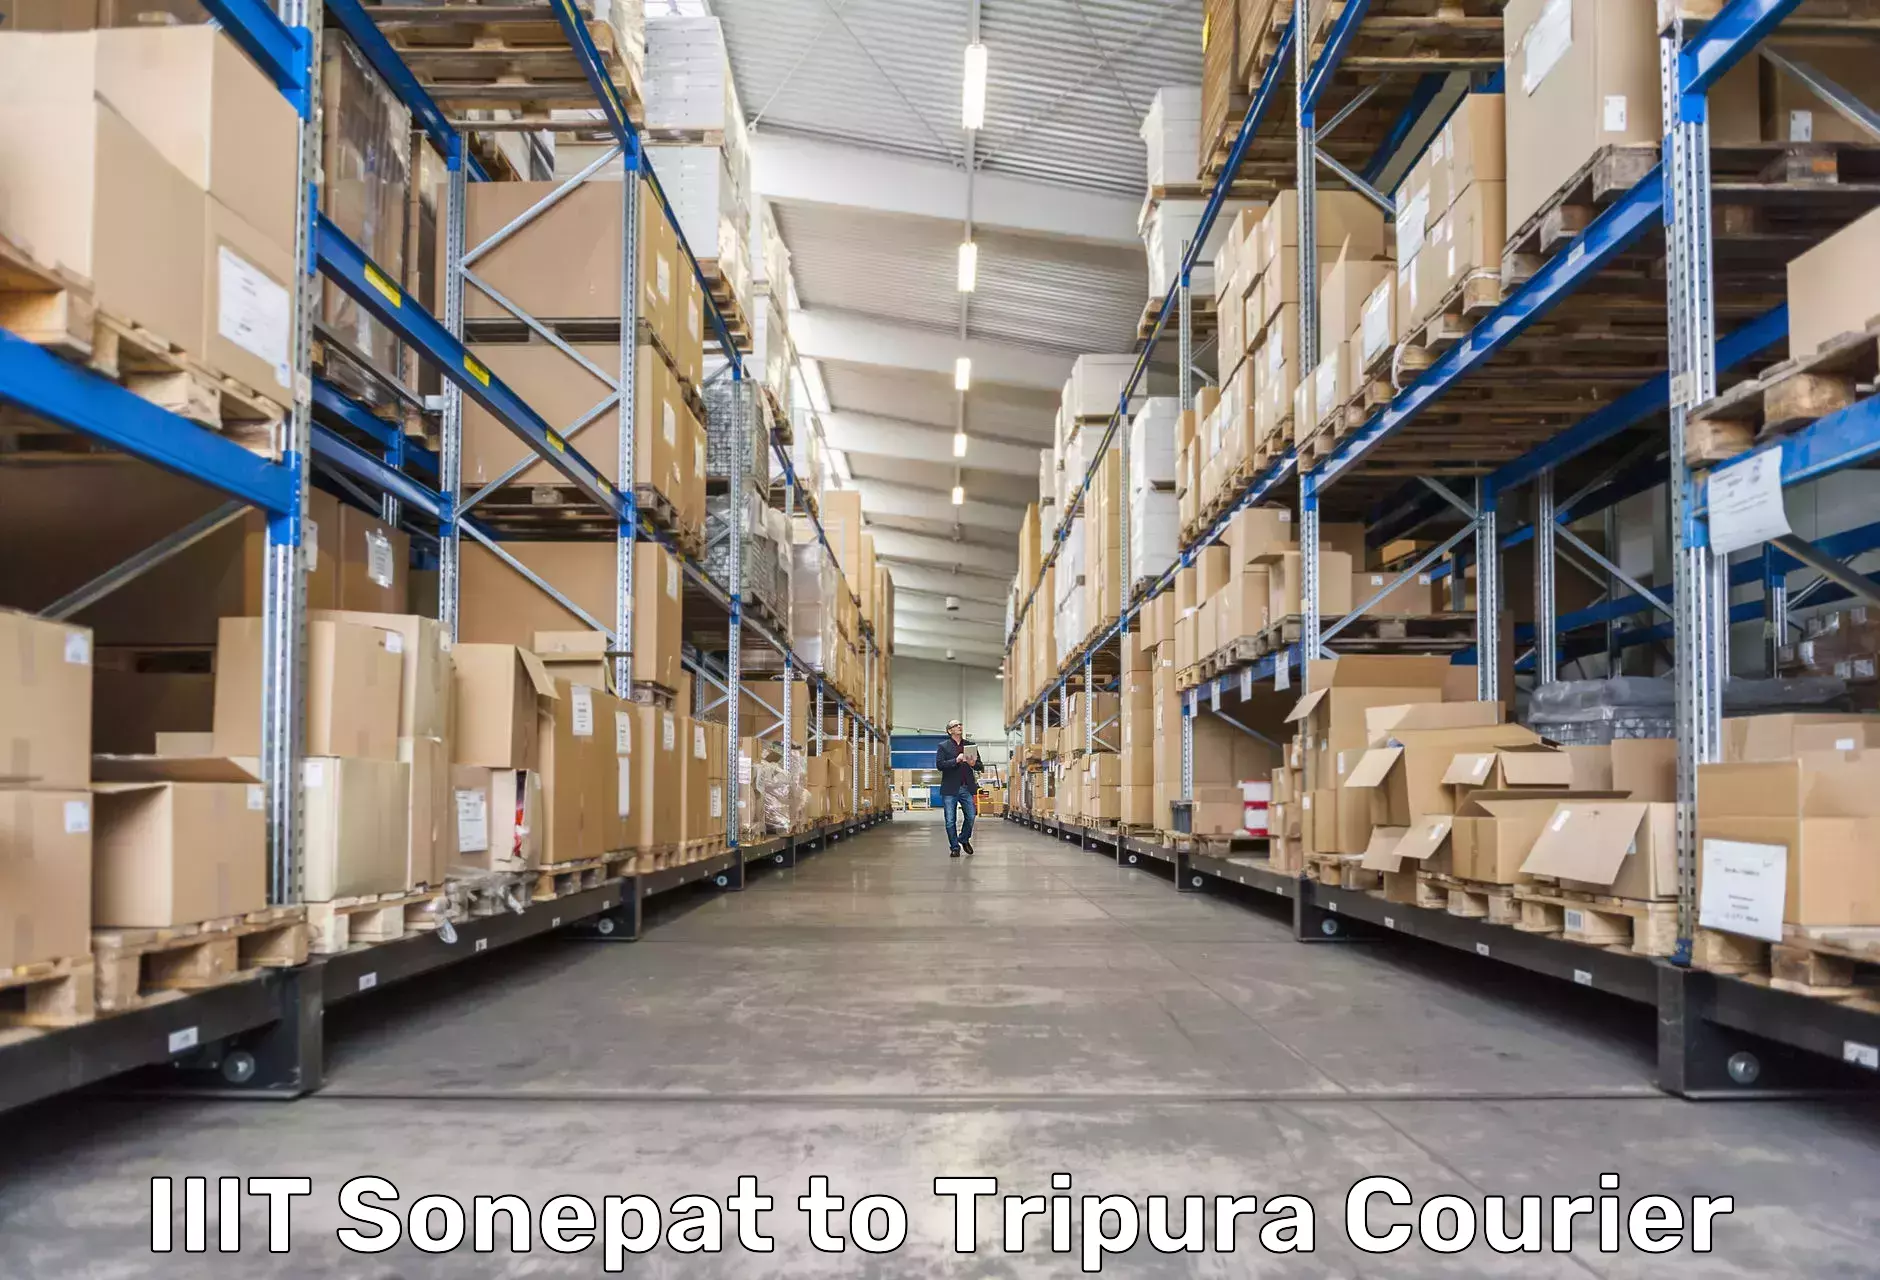 Cost-effective courier solutions IIIT Sonepat to Manu Bazar